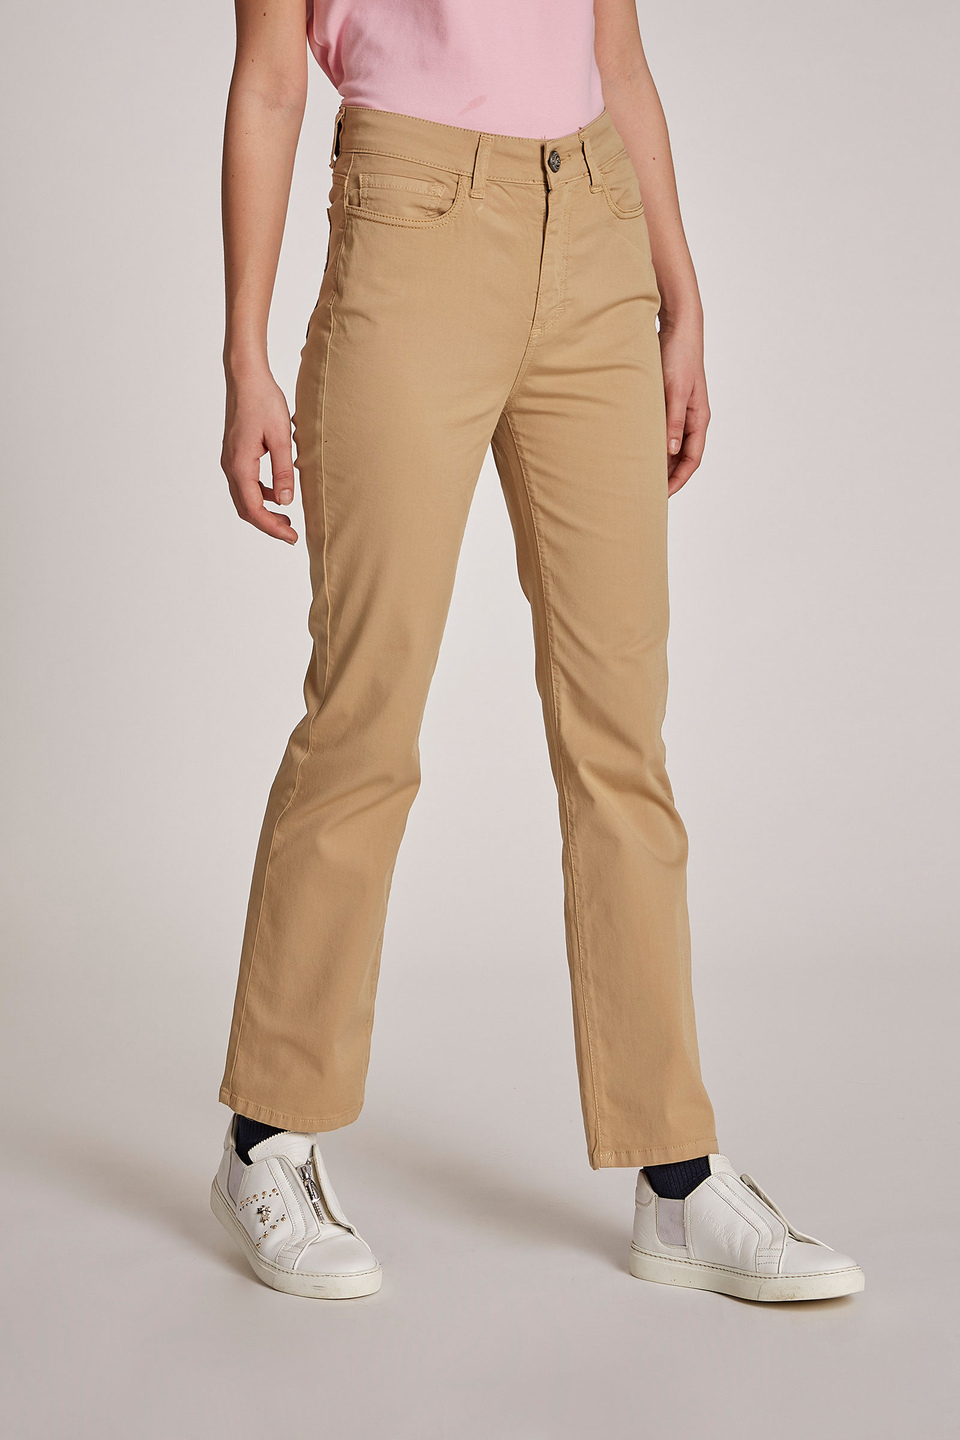 Pantalone da donna cinque tasche in cotone elasticizzato regular fit | La Martina - Official Online Shop